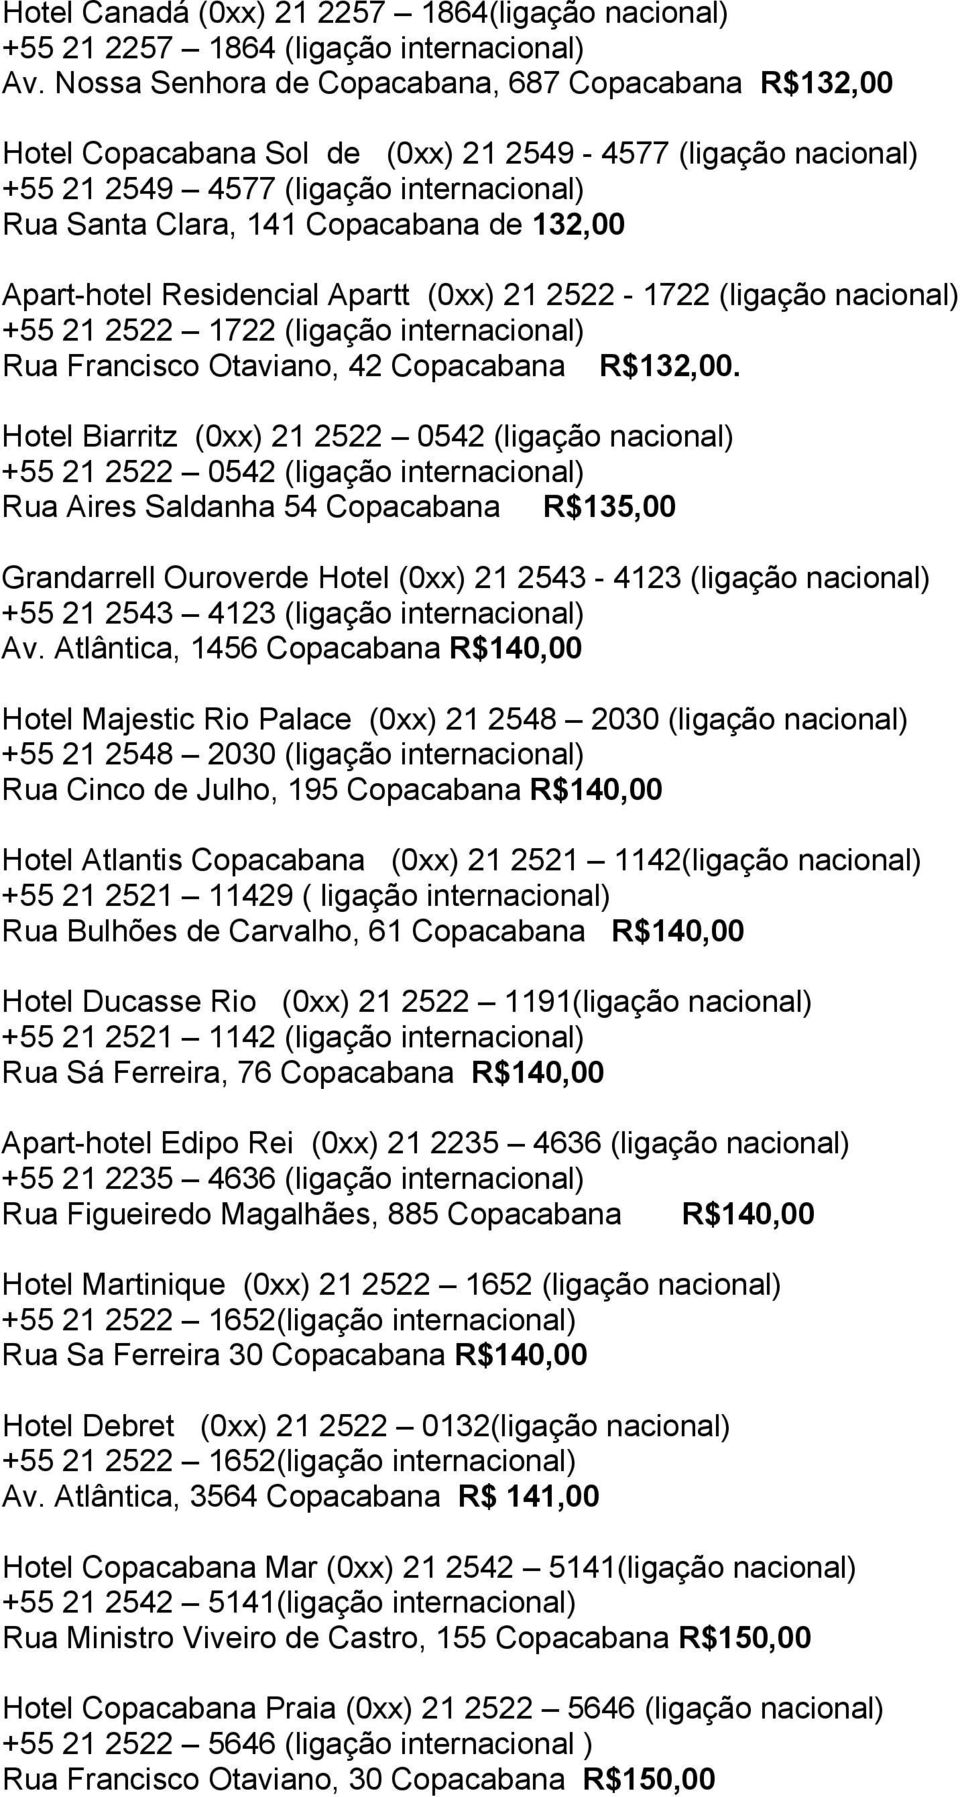 Apart-hotel Residencial Apartt (0xx) 21 2522-1722 (ligação nacional) +55 21 2522 1722 (ligação internacional) Rua Francisco Otaviano, 42 Copacabana R$132,00.